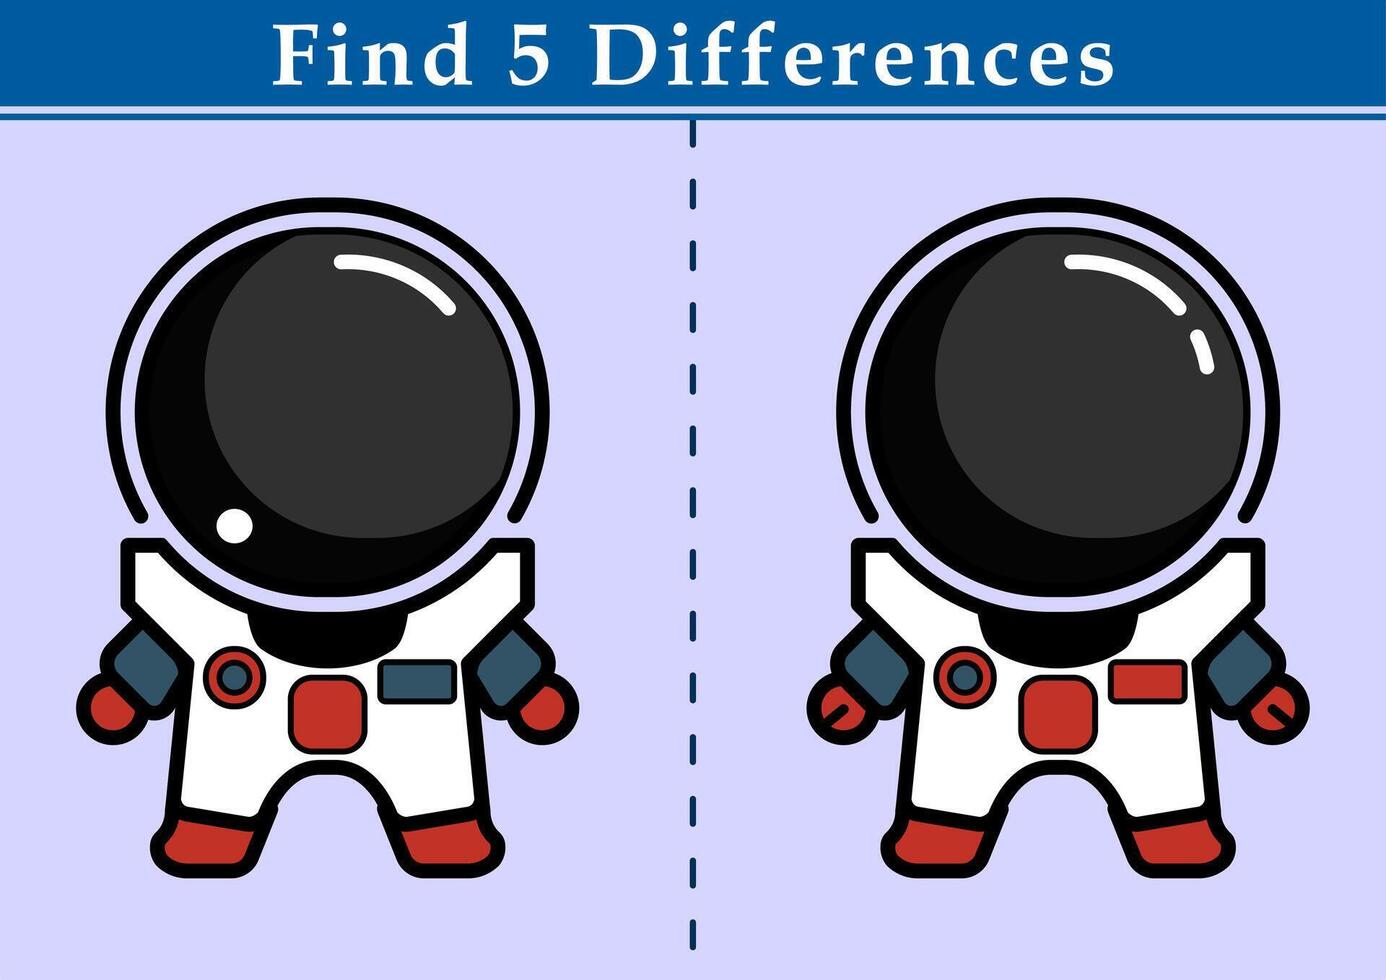 encontrar 5 5 diferencias educativo juego para niños. ilustración de dibujos animados el astronauta. educación hoja de cálculo imprimible a4 tamaño. vector